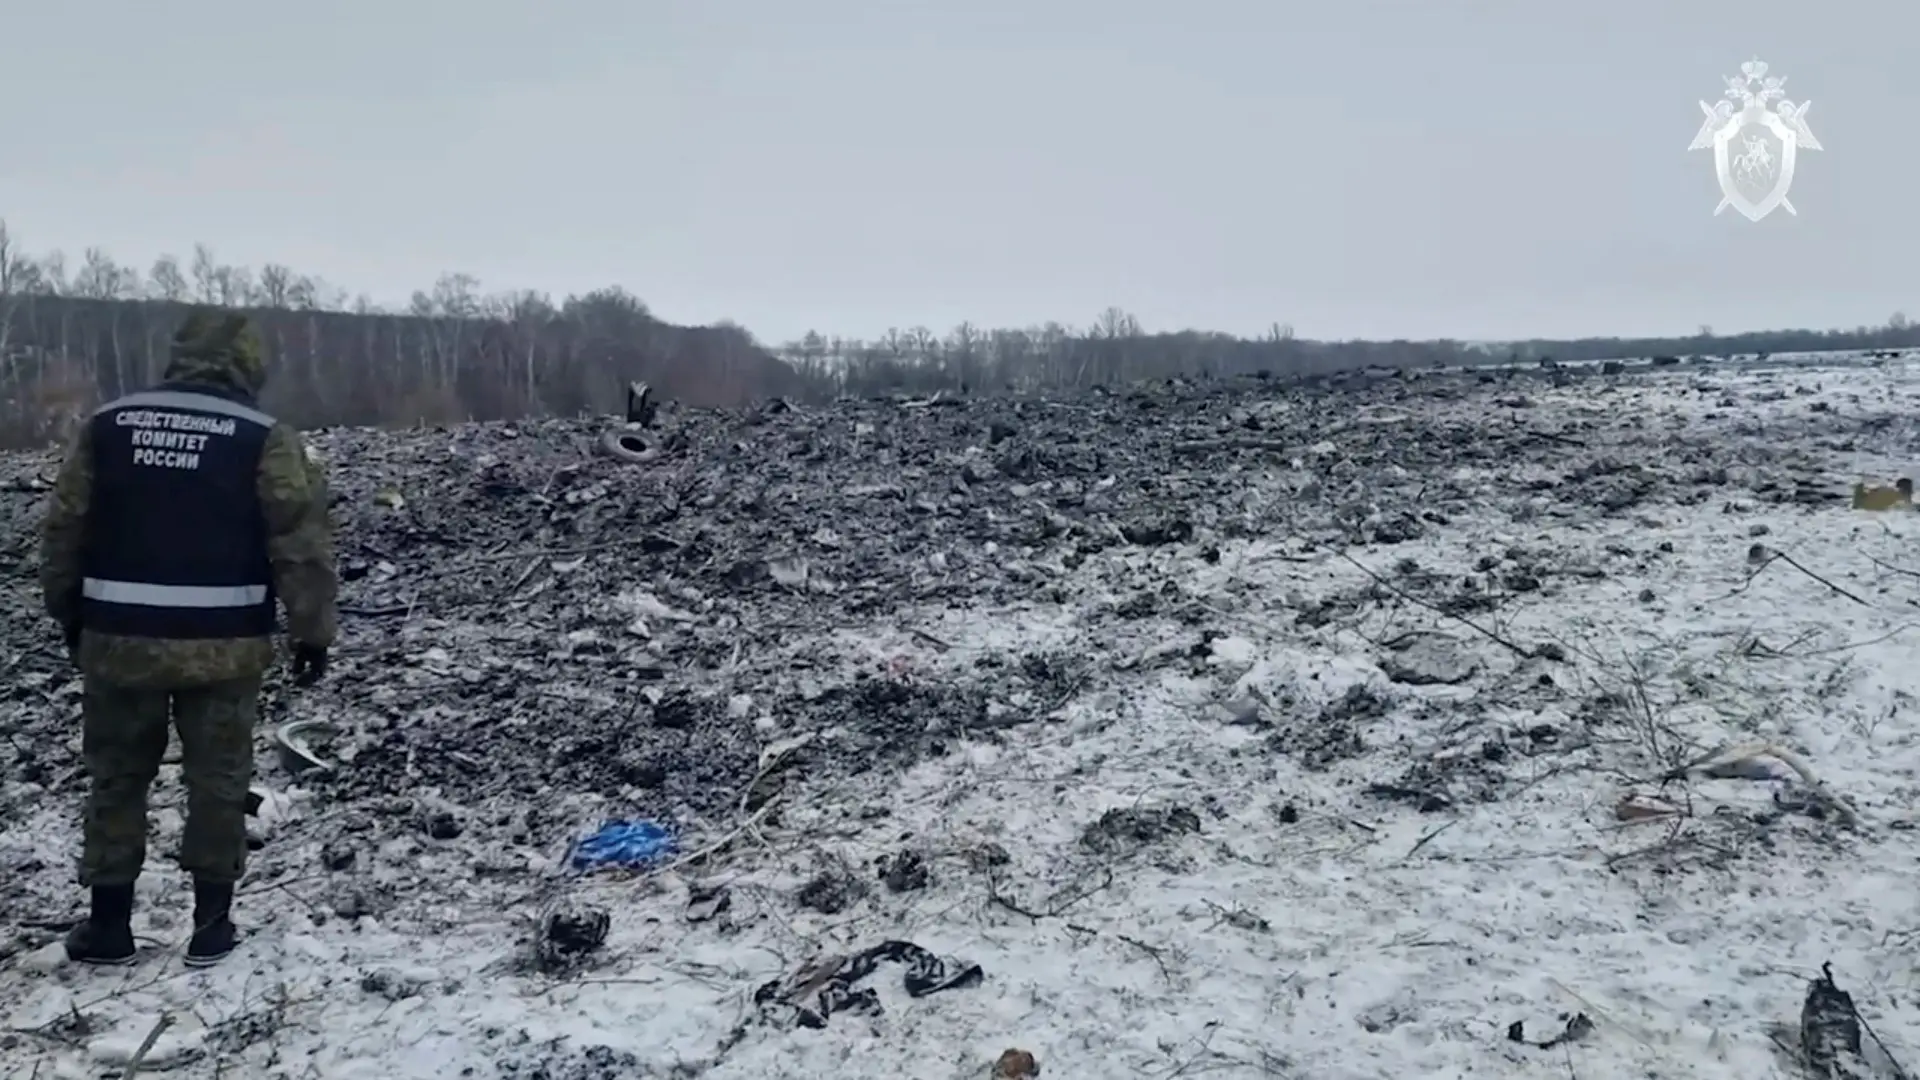 Local da queda do avião de transporte militar russo Ilyushin Il-76 perto da aldeia de Yablonovo, na região de Belgorod